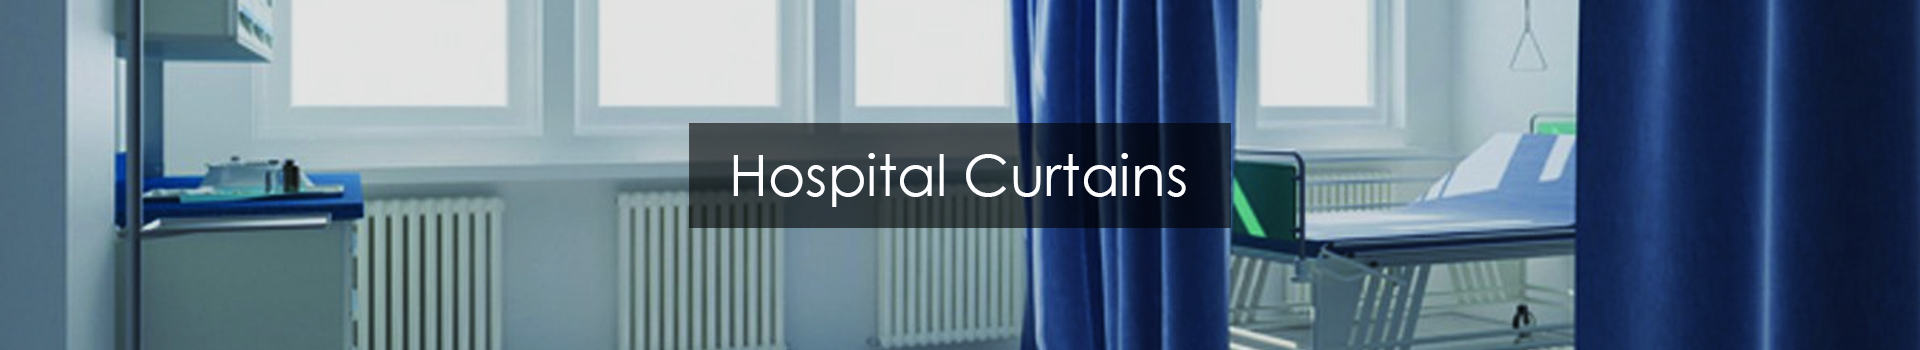 Hospital Curtains in Dubai & Abudhabi